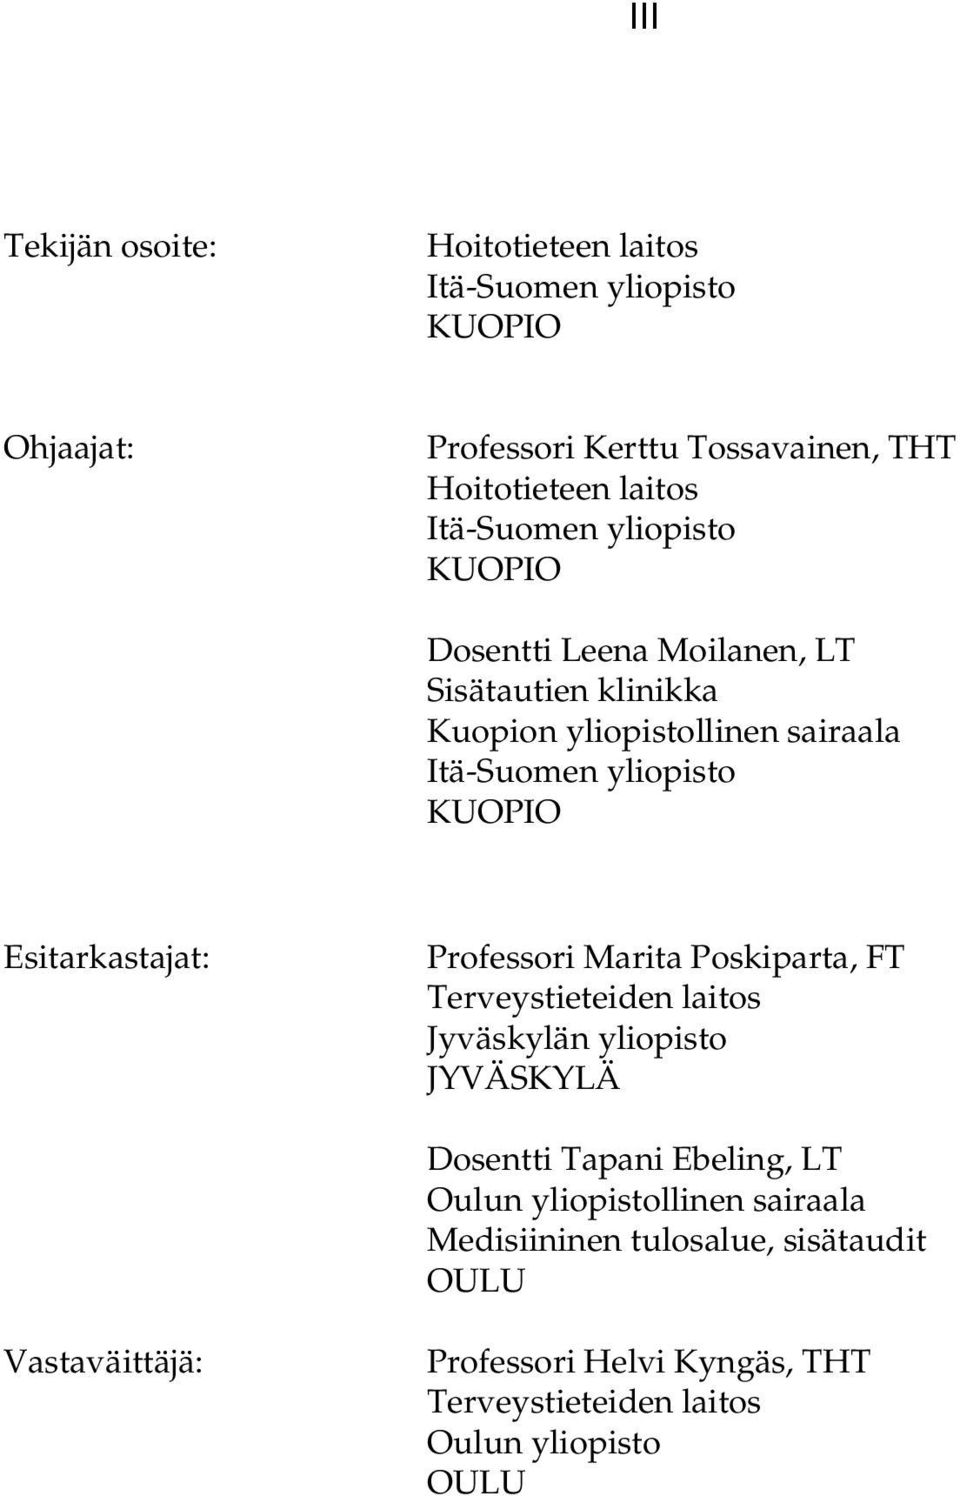 Esitarkastajat: Professori Marita Poskiparta, FT Terveystieteiden laitos Jyväskylän yliopisto JYVÄSKYLÄ Dosentti Tapani Ebeling, LT Oulun